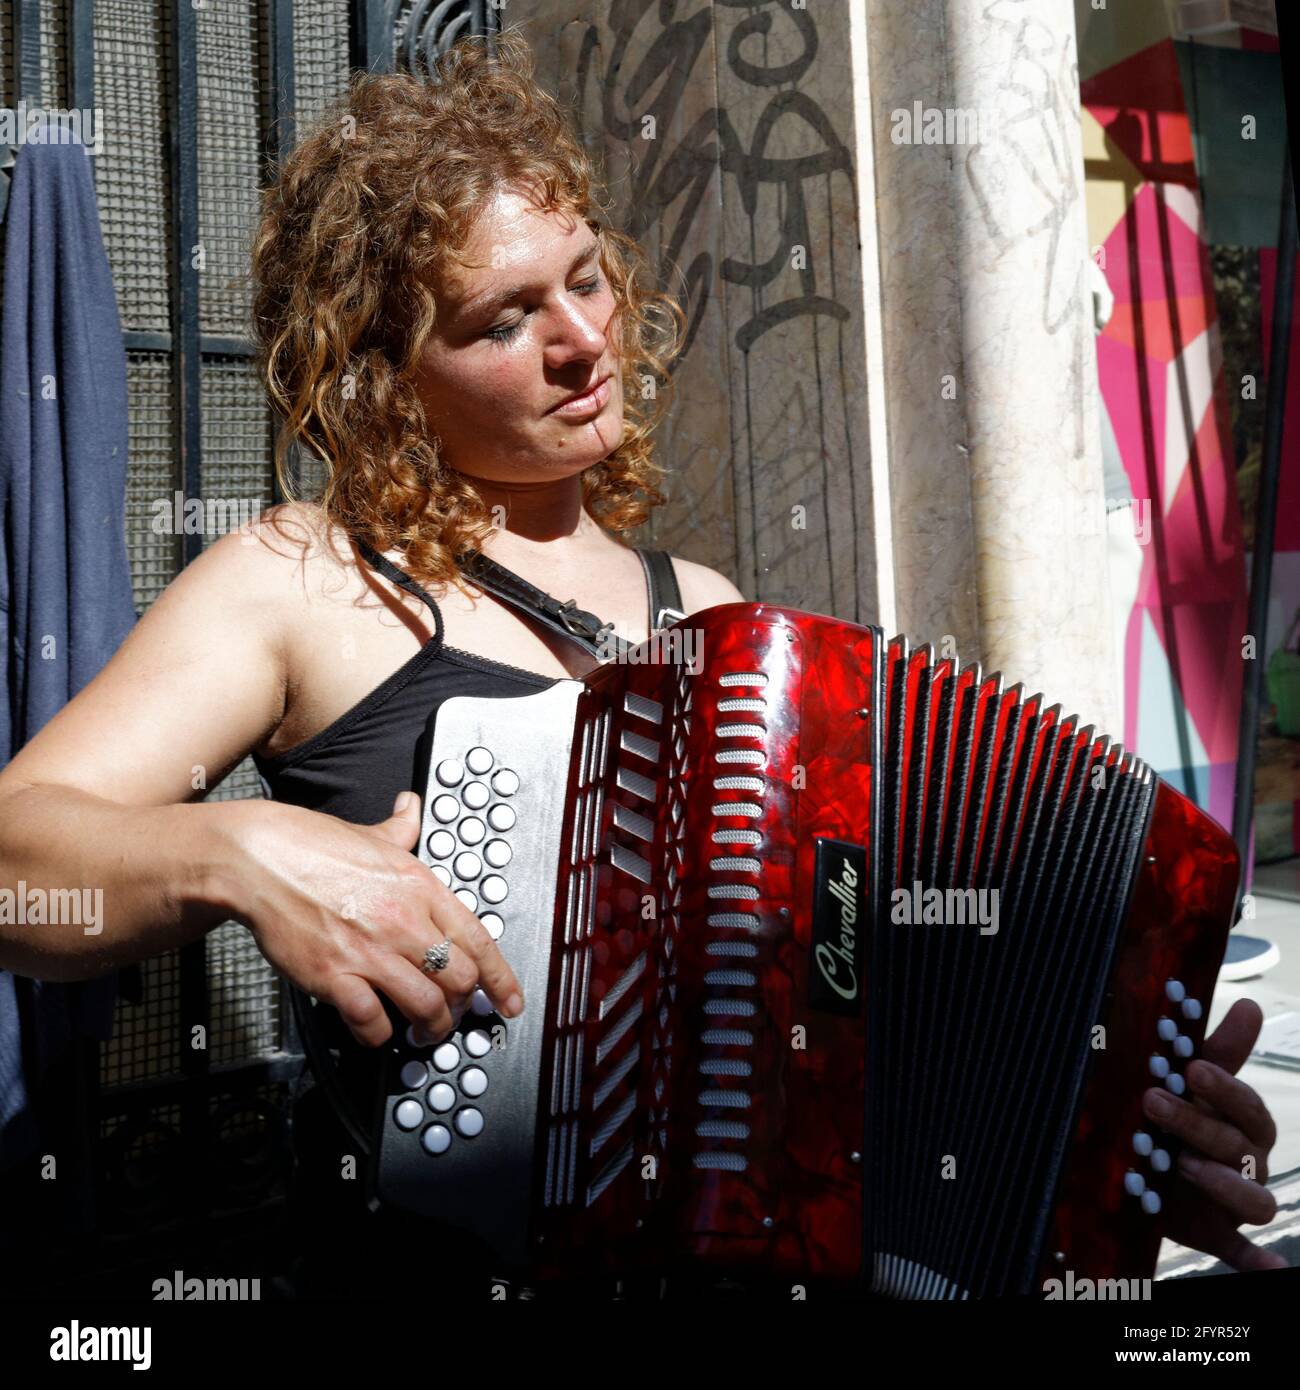 jouer de l'accordéon, Place St. Etienne à Lüttich Belgique Stockfoto